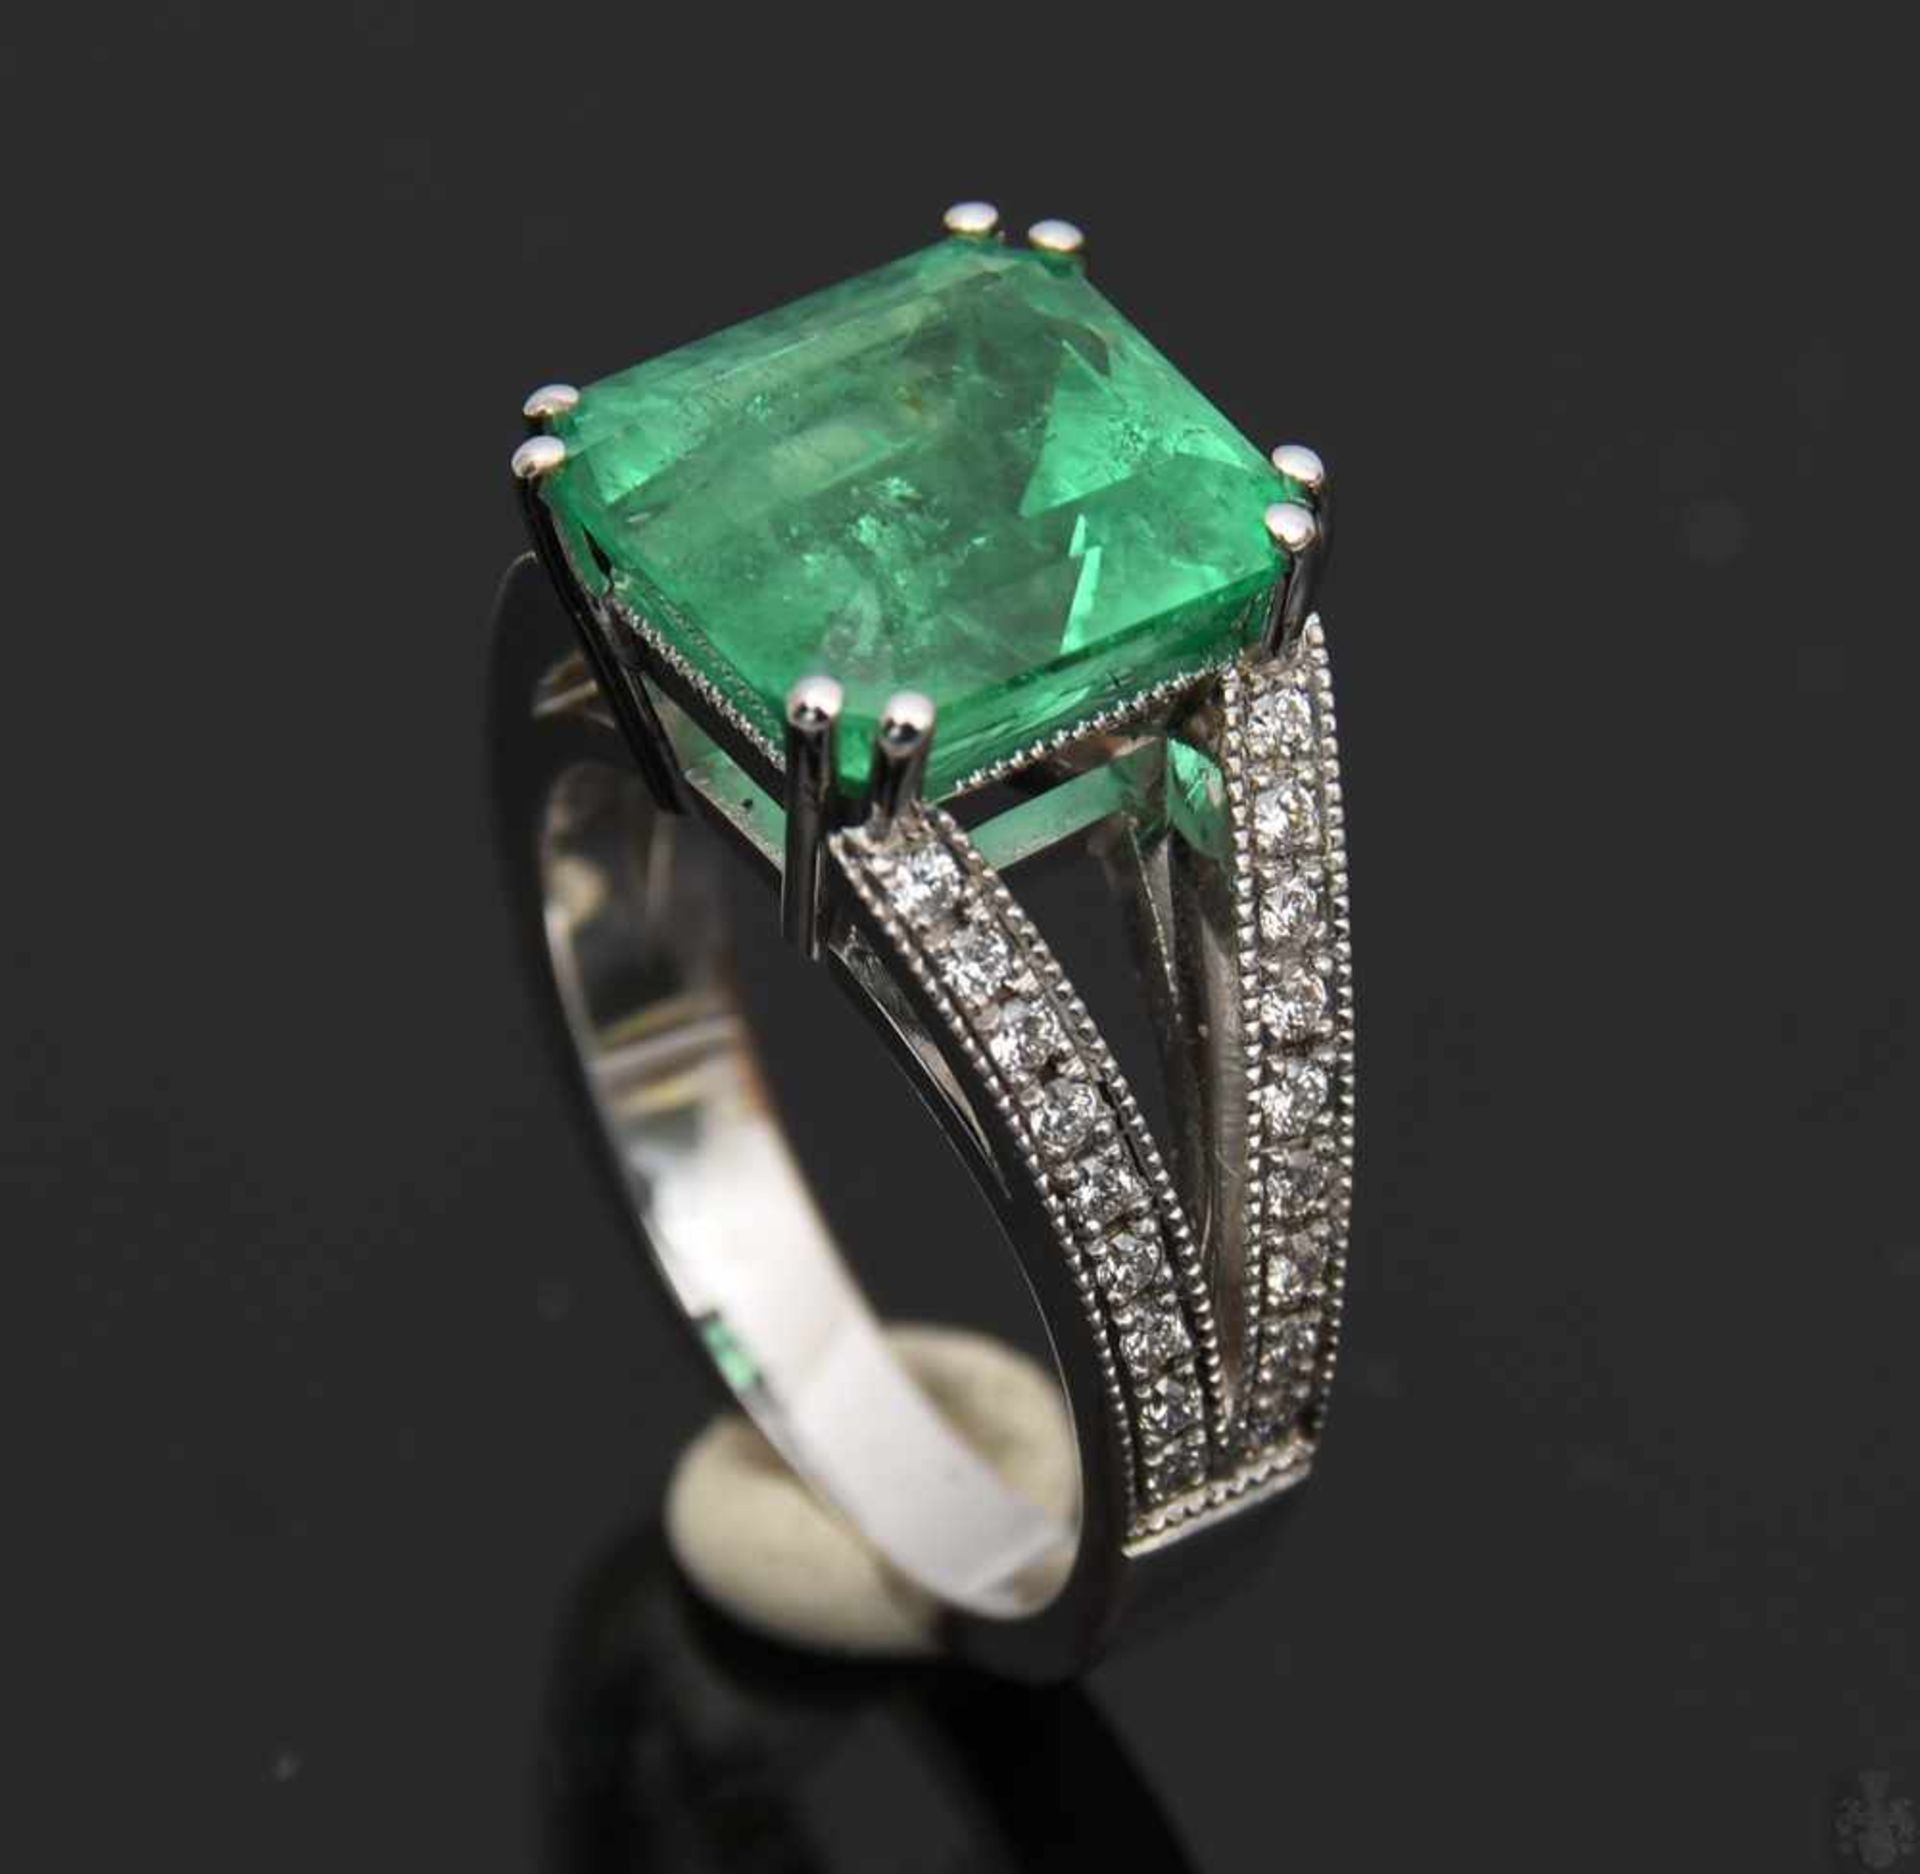 RING MIT SMARAGD UND BRILLIANTEN.Ring mit Smaragd und Brillianten, WG 750/000. 36 Brillianten zus. - Bild 9 aus 16